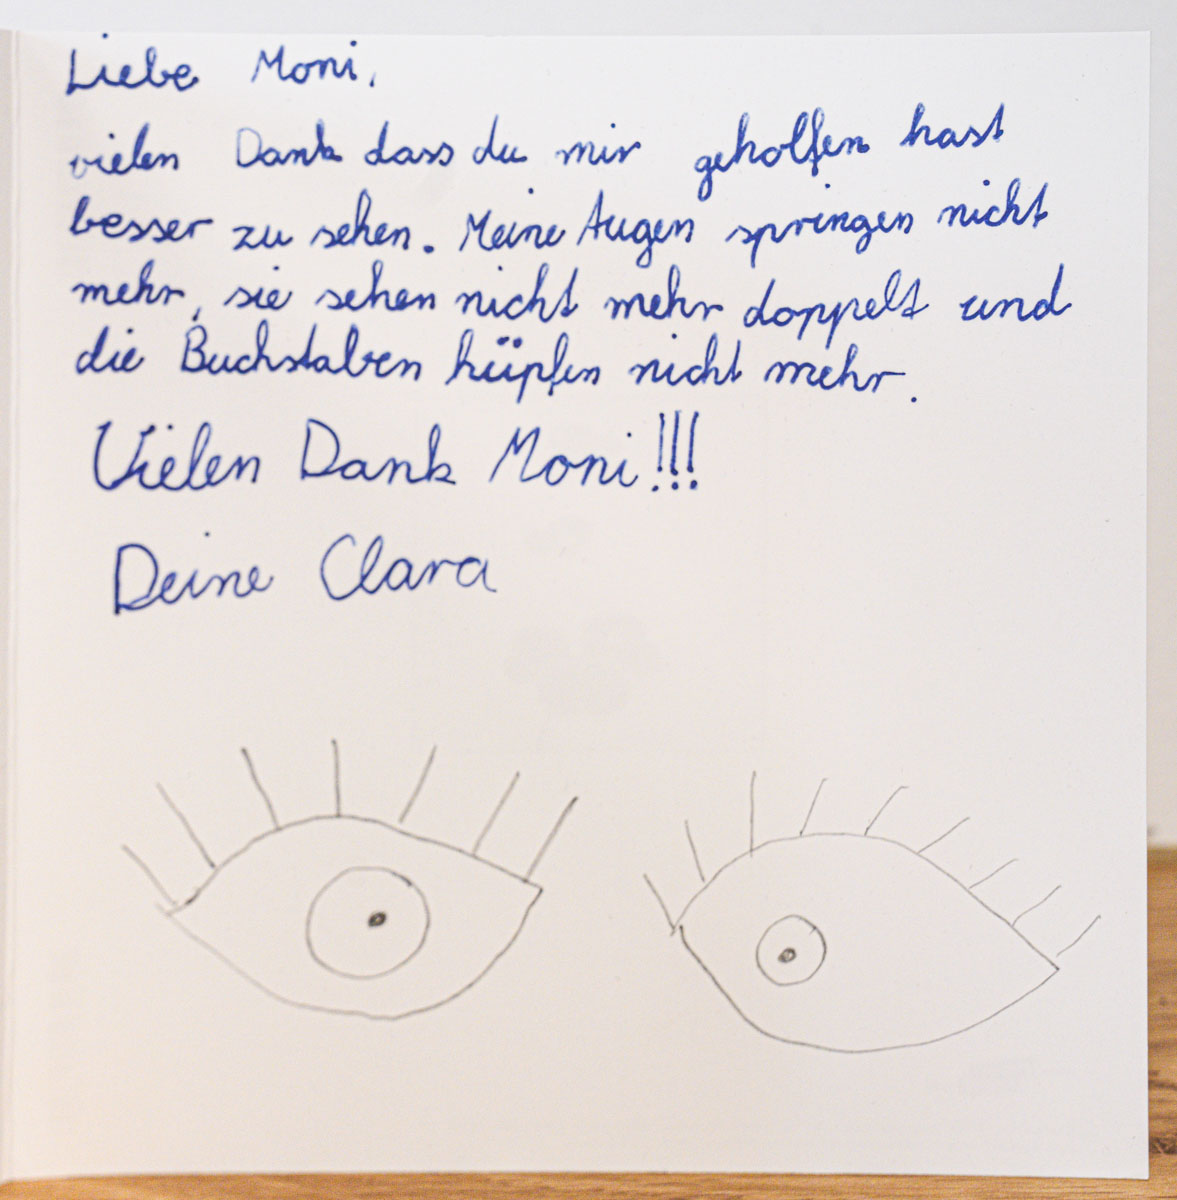 Clara 2019: "Dankeskarte"